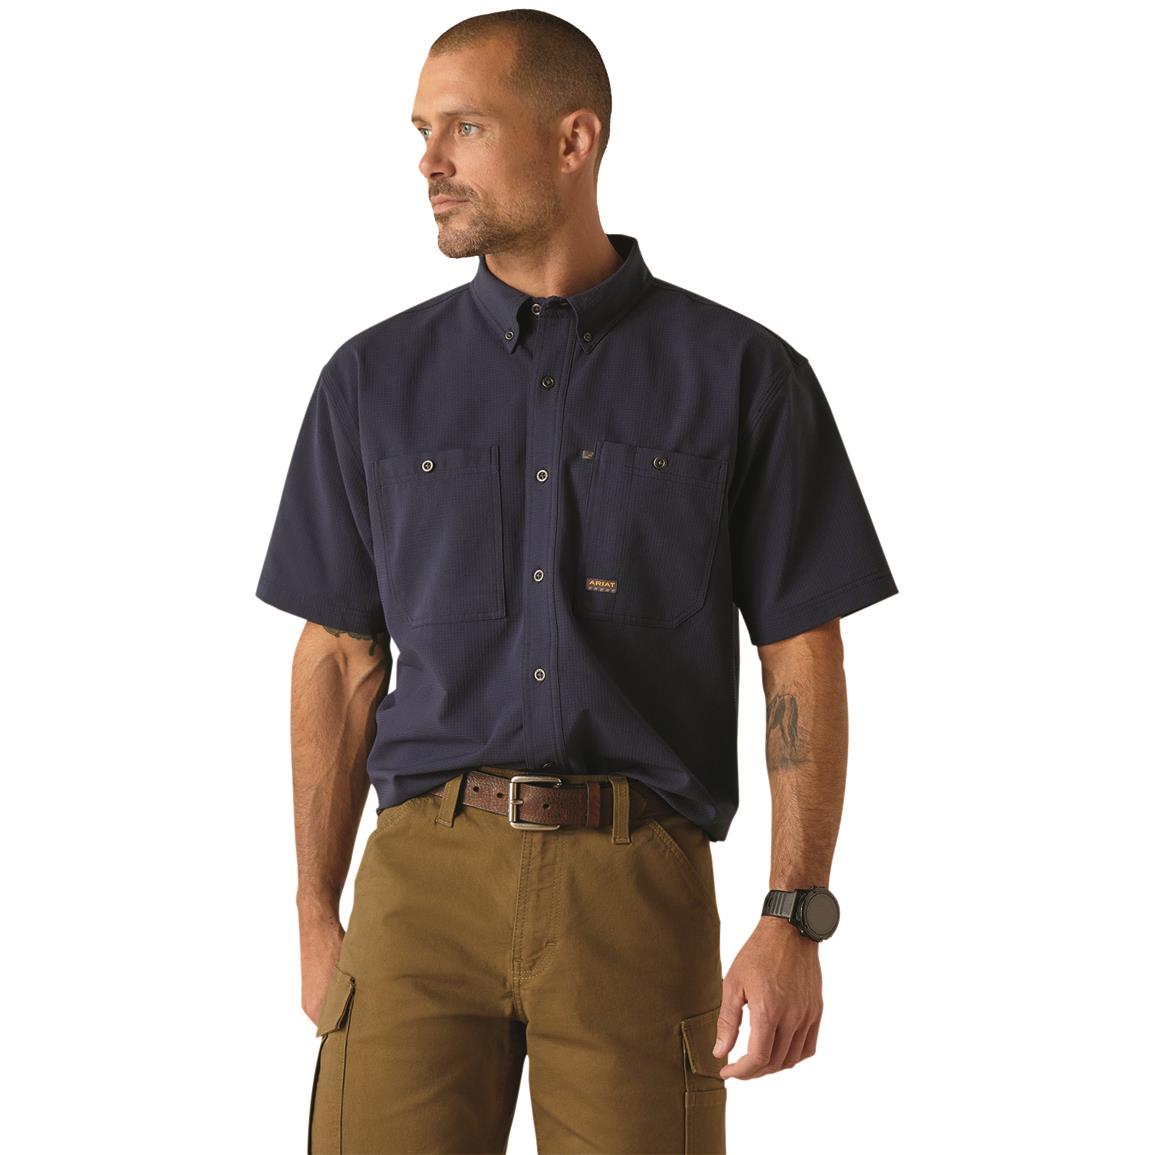 Ariat Men's Rebar Made Tough 360 AirFlow Short Sleeve Work Shirt, Navy